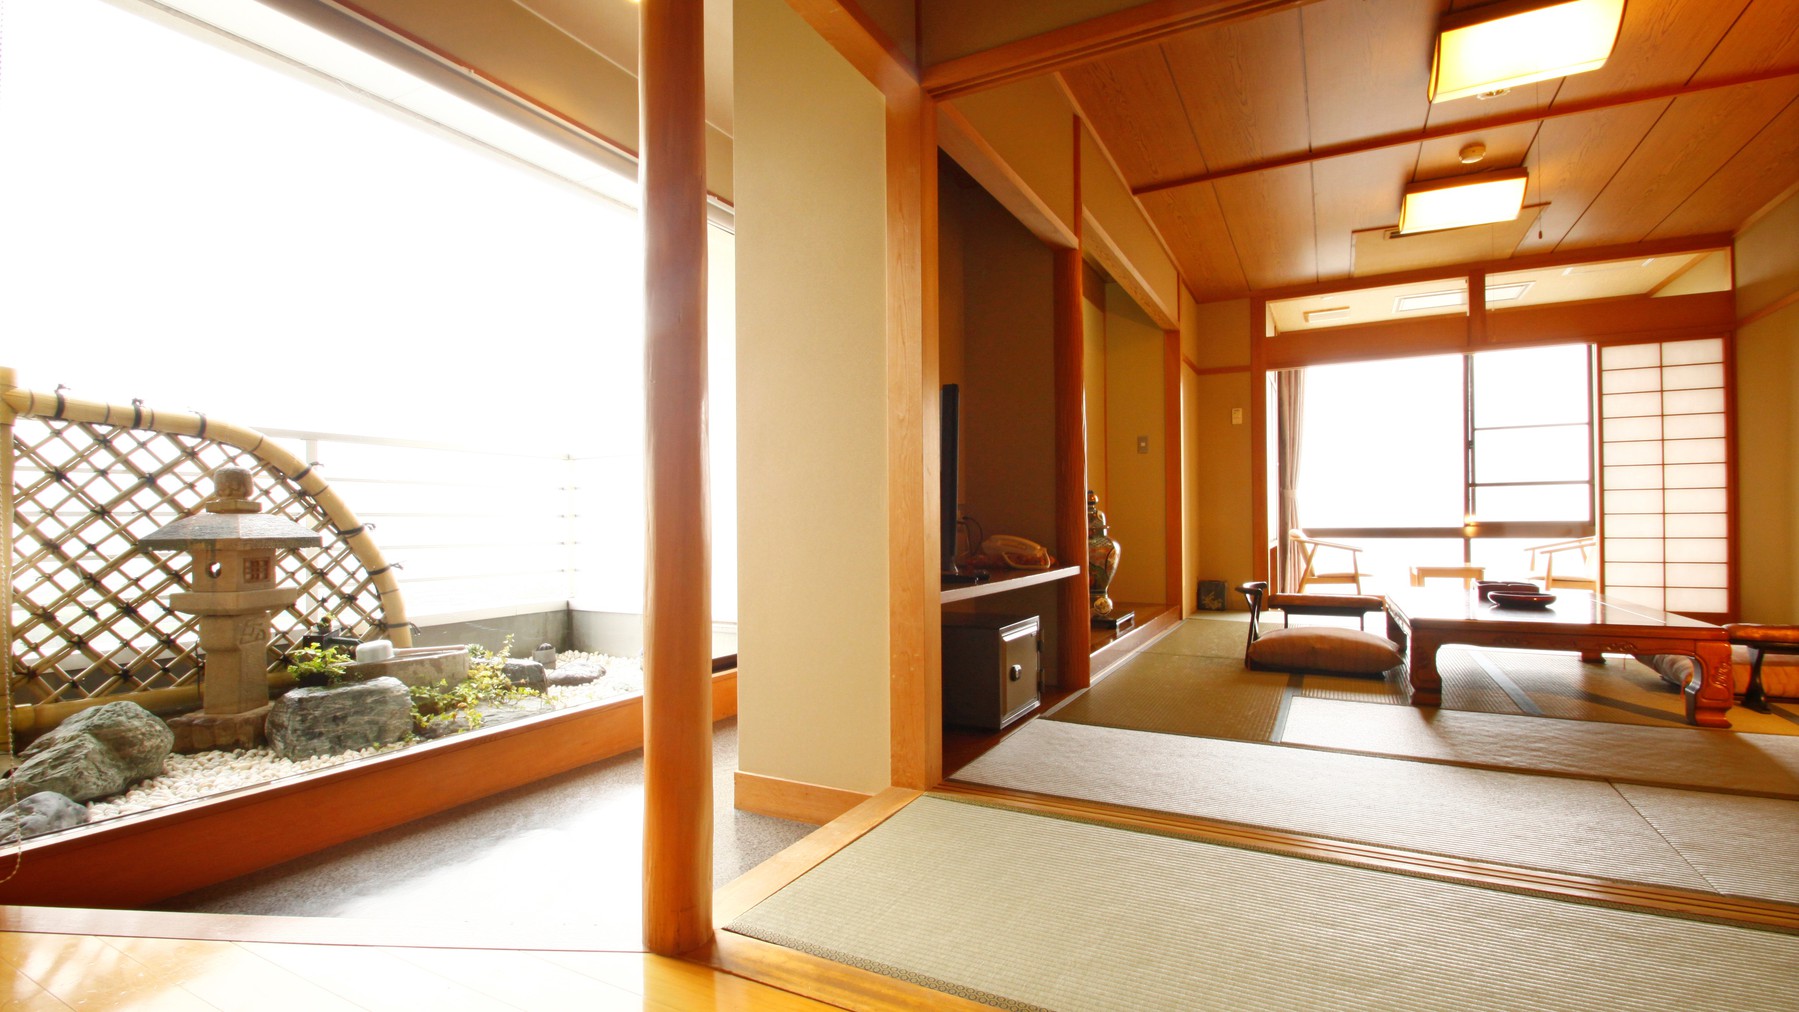 【展望風呂付き和洋室】琉球畳のツインベッドルームと和の12畳間からなる和洋室。一日一組様限定のお部